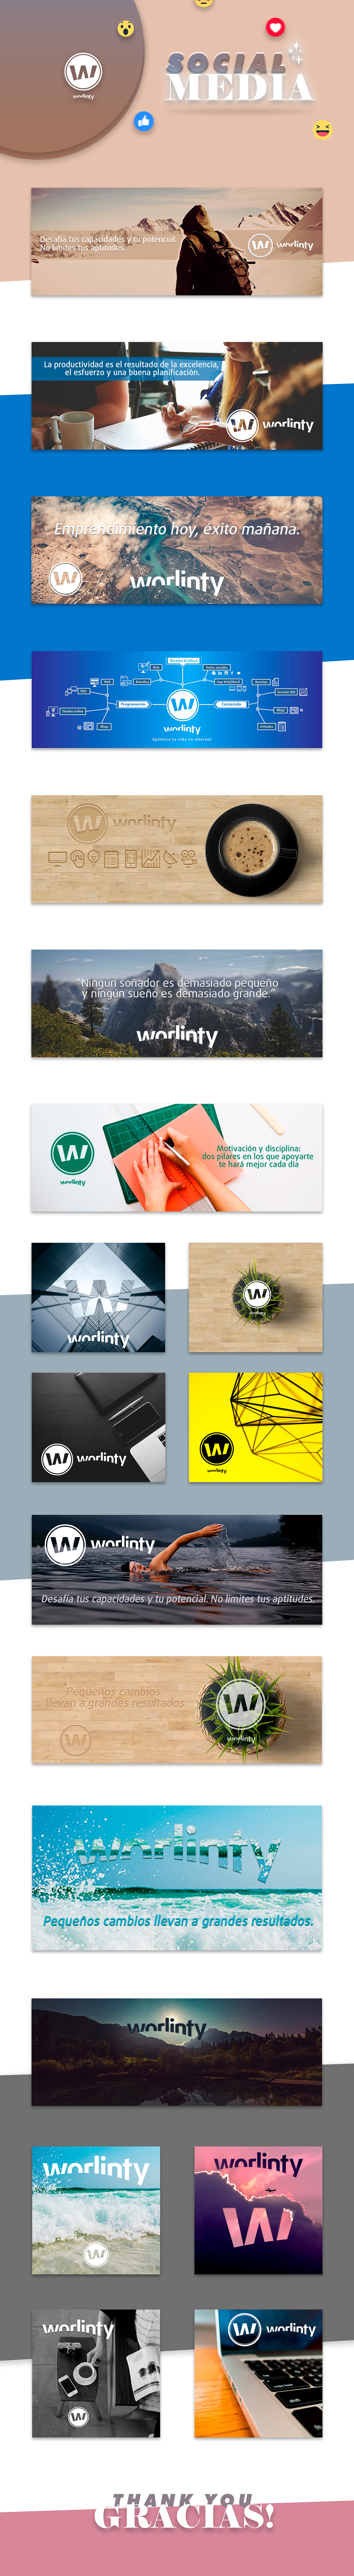 social media Diseño web banner diseño gráfico